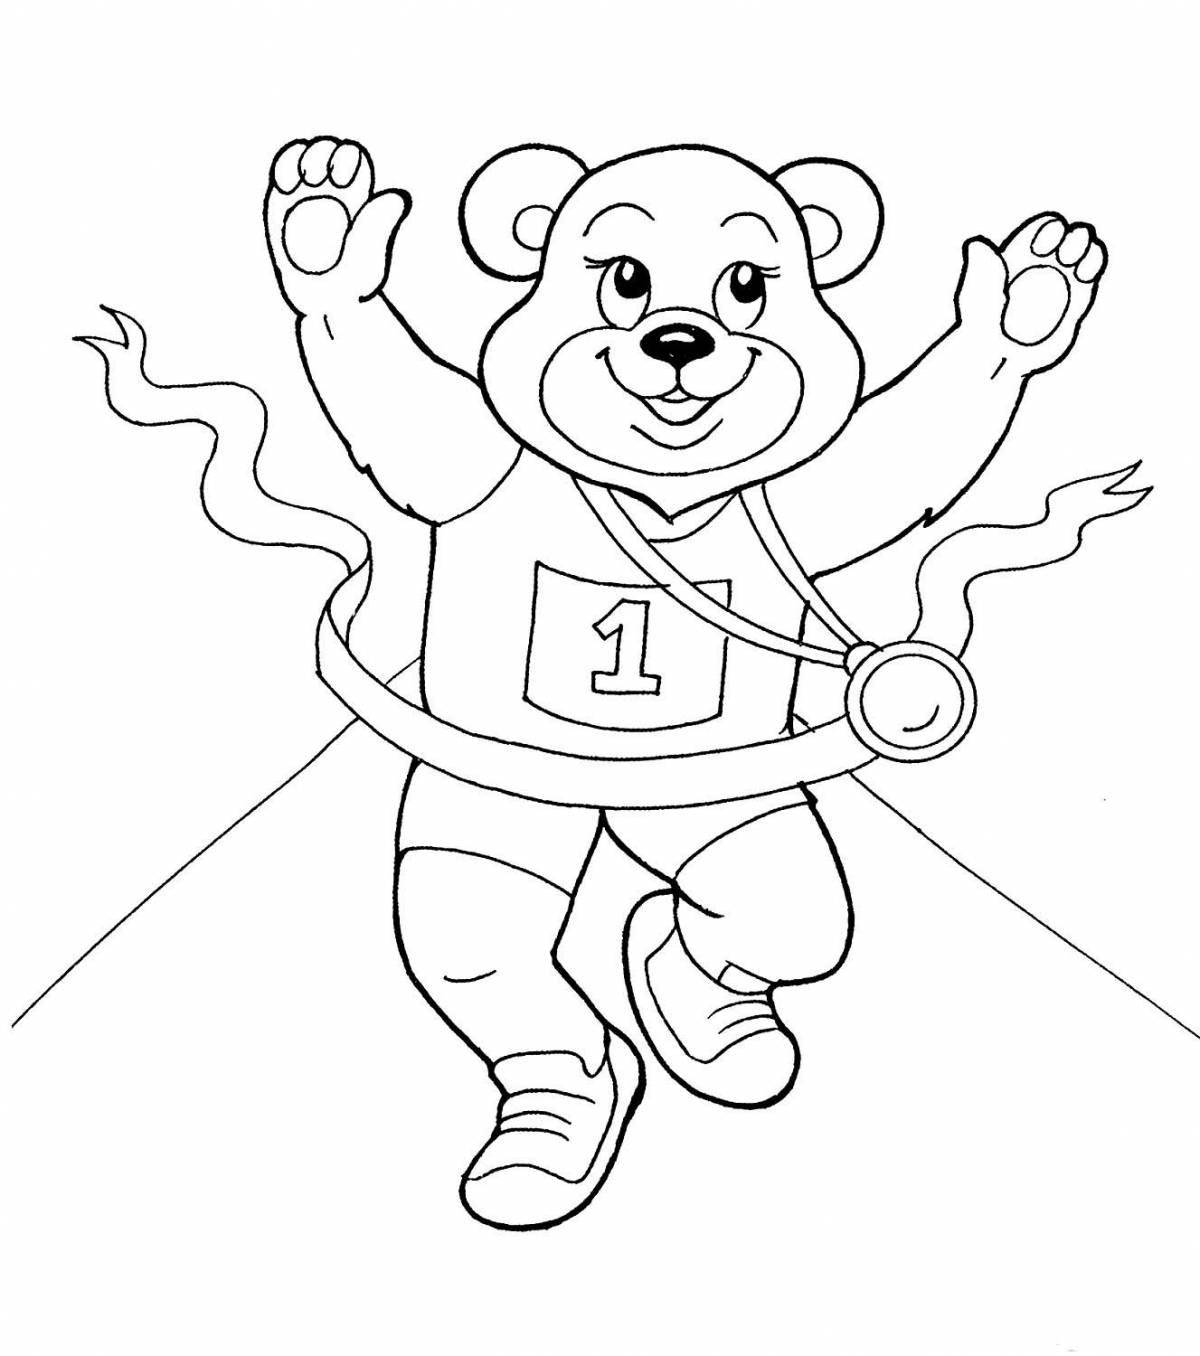 Раскраска блестящий олимпийский медведь